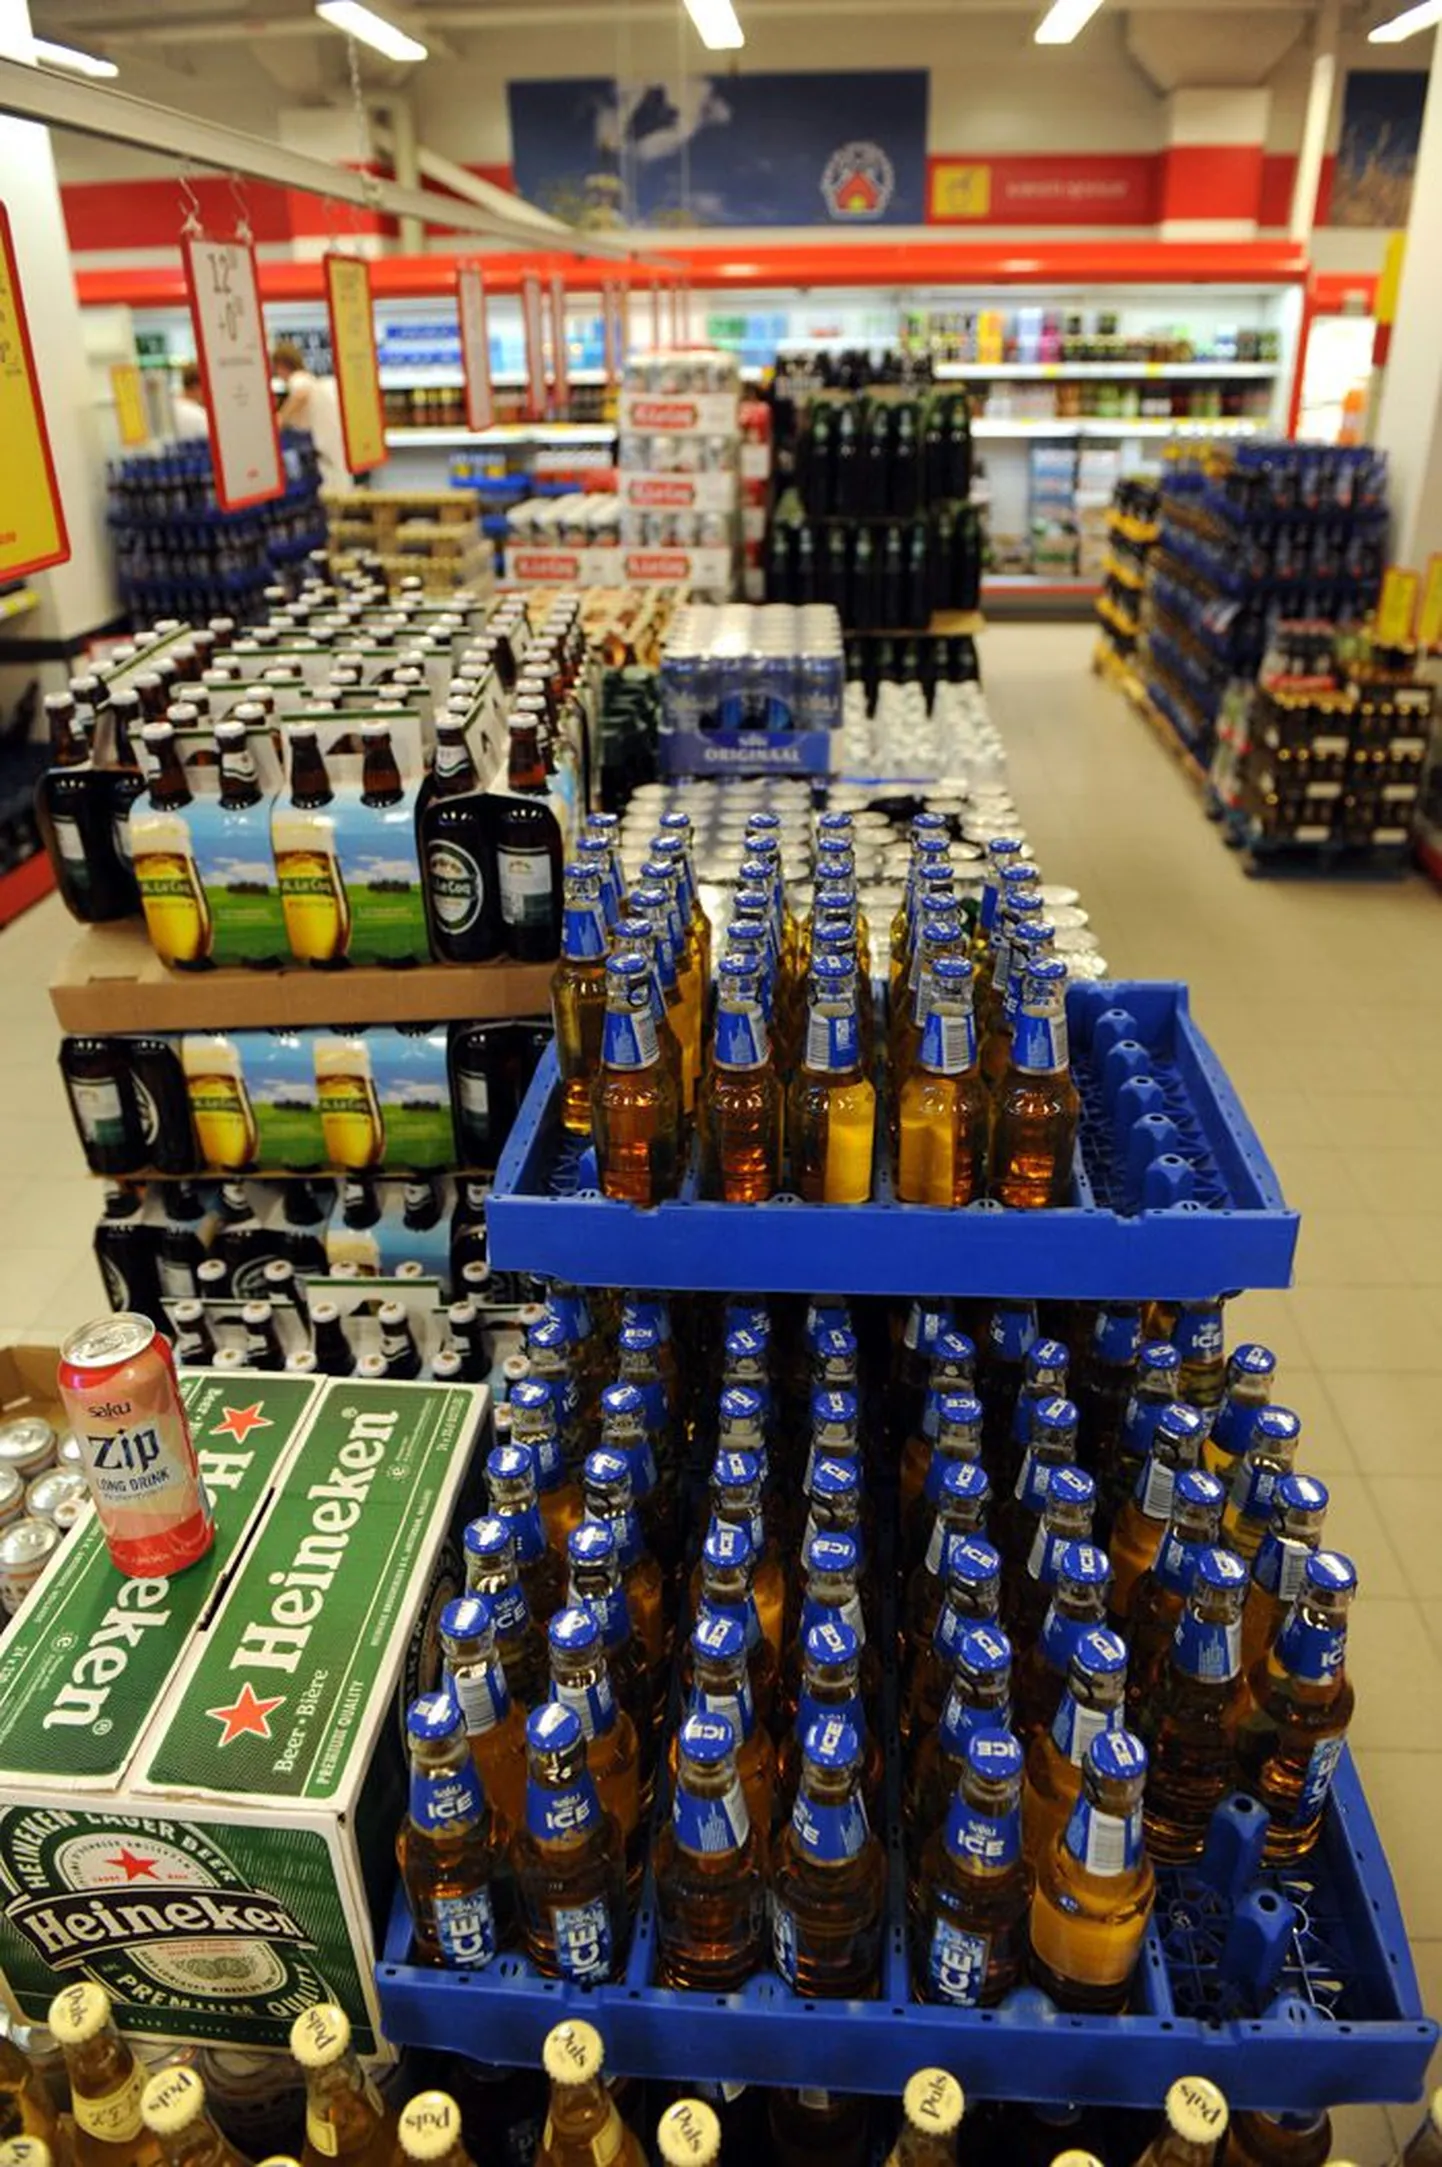 Производители пива обещают уже к концу этого года подорожание пенного напитка. Сакуский пивзавод уже объявил о повышении цен с 1 сентября.